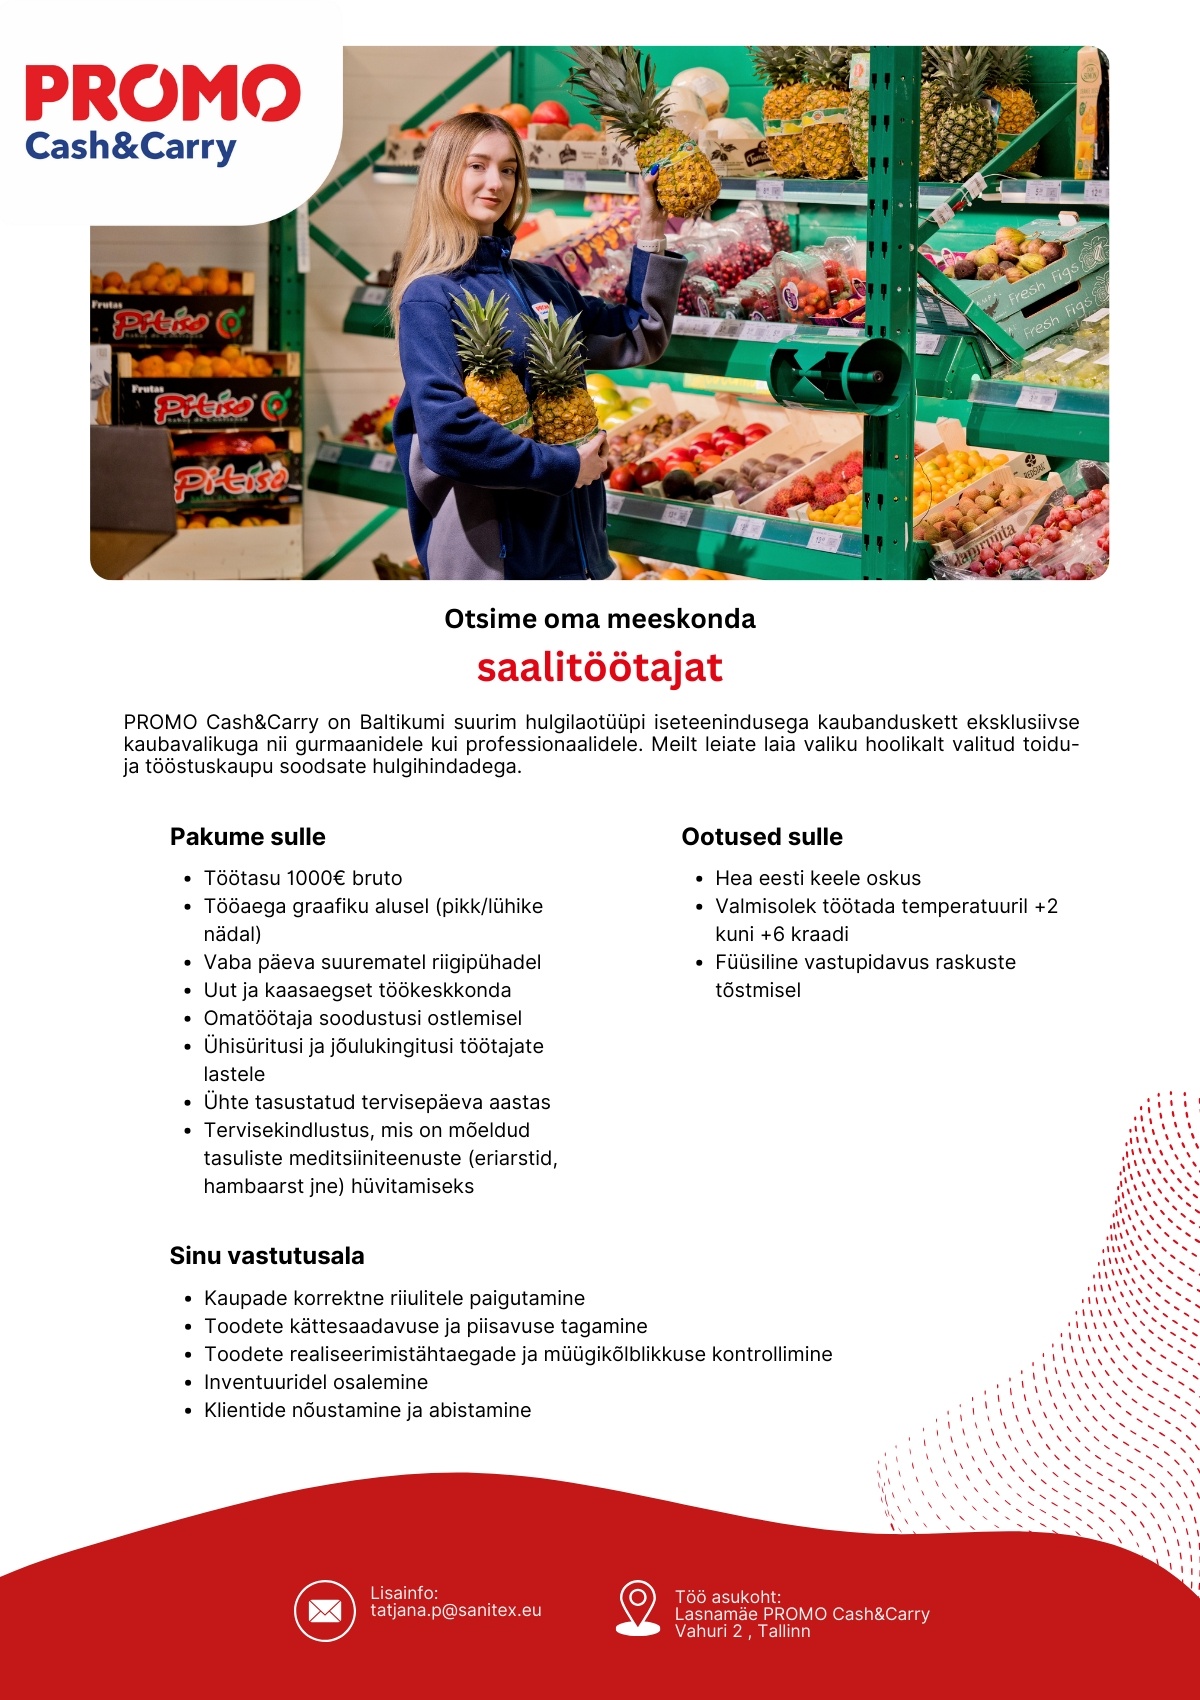 Sanitex OÜ Saalitöötaja termokaupade müügisaalis Lasnamäe Promo Cash&Carry hulgikaupluses